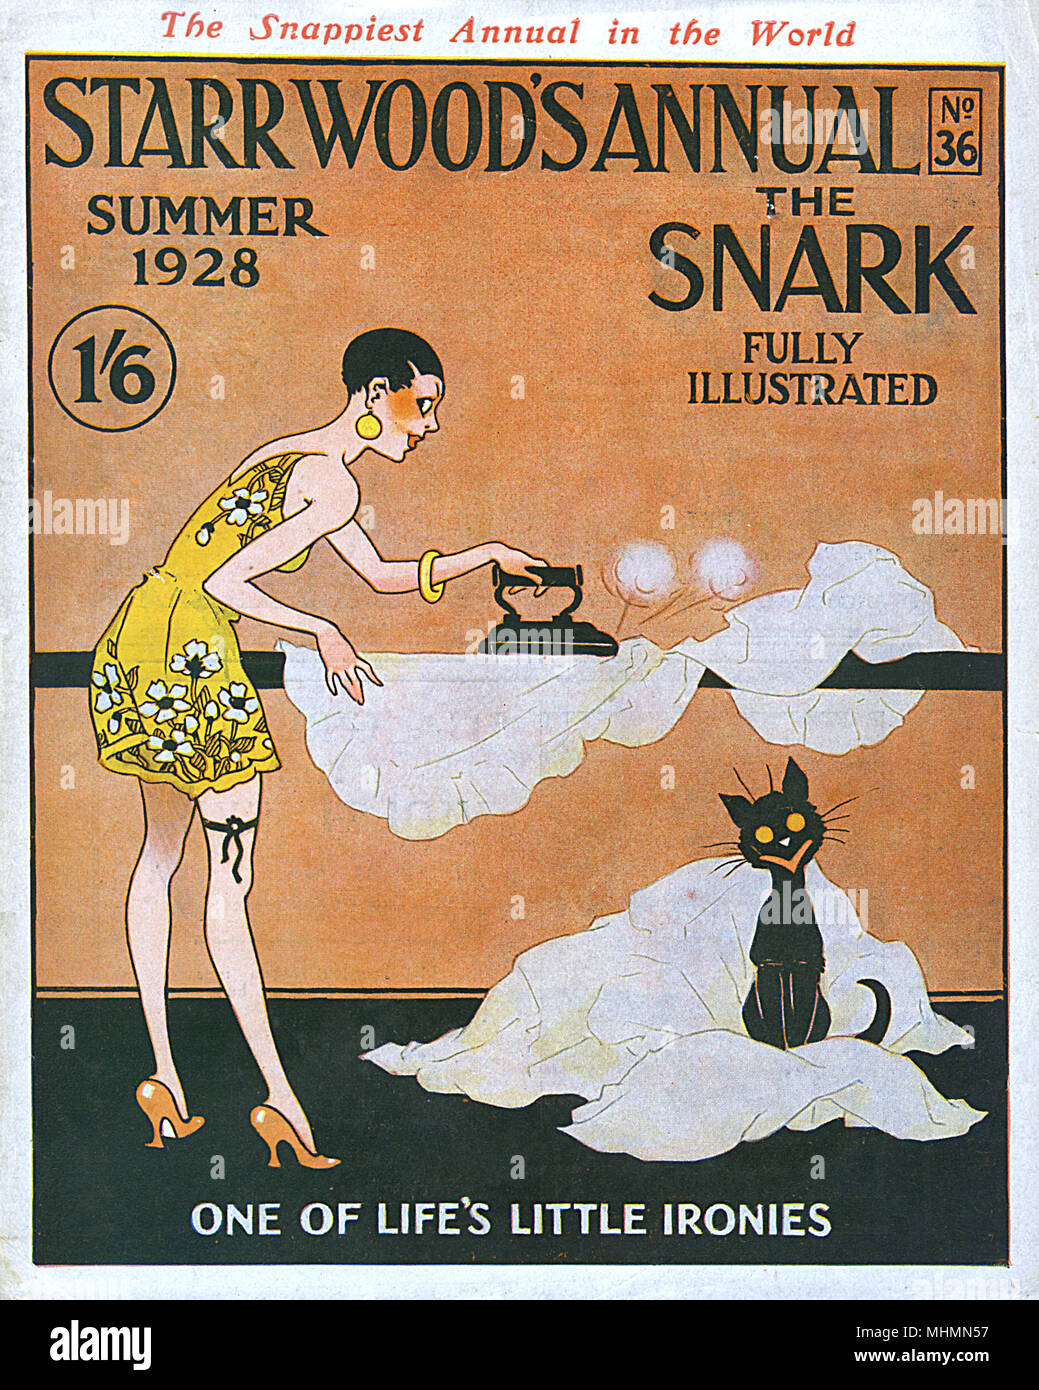 Capot avant de Starr Wood's Annual, le Snark, été 1928, avec une illustration d'une flapper girl avec cheveux sévèrement recadrées et jupes très courtes, à la recherche surtout pour faire une place prestigieuse dans le domaine du repassage. Date : 1928 Banque D'Images